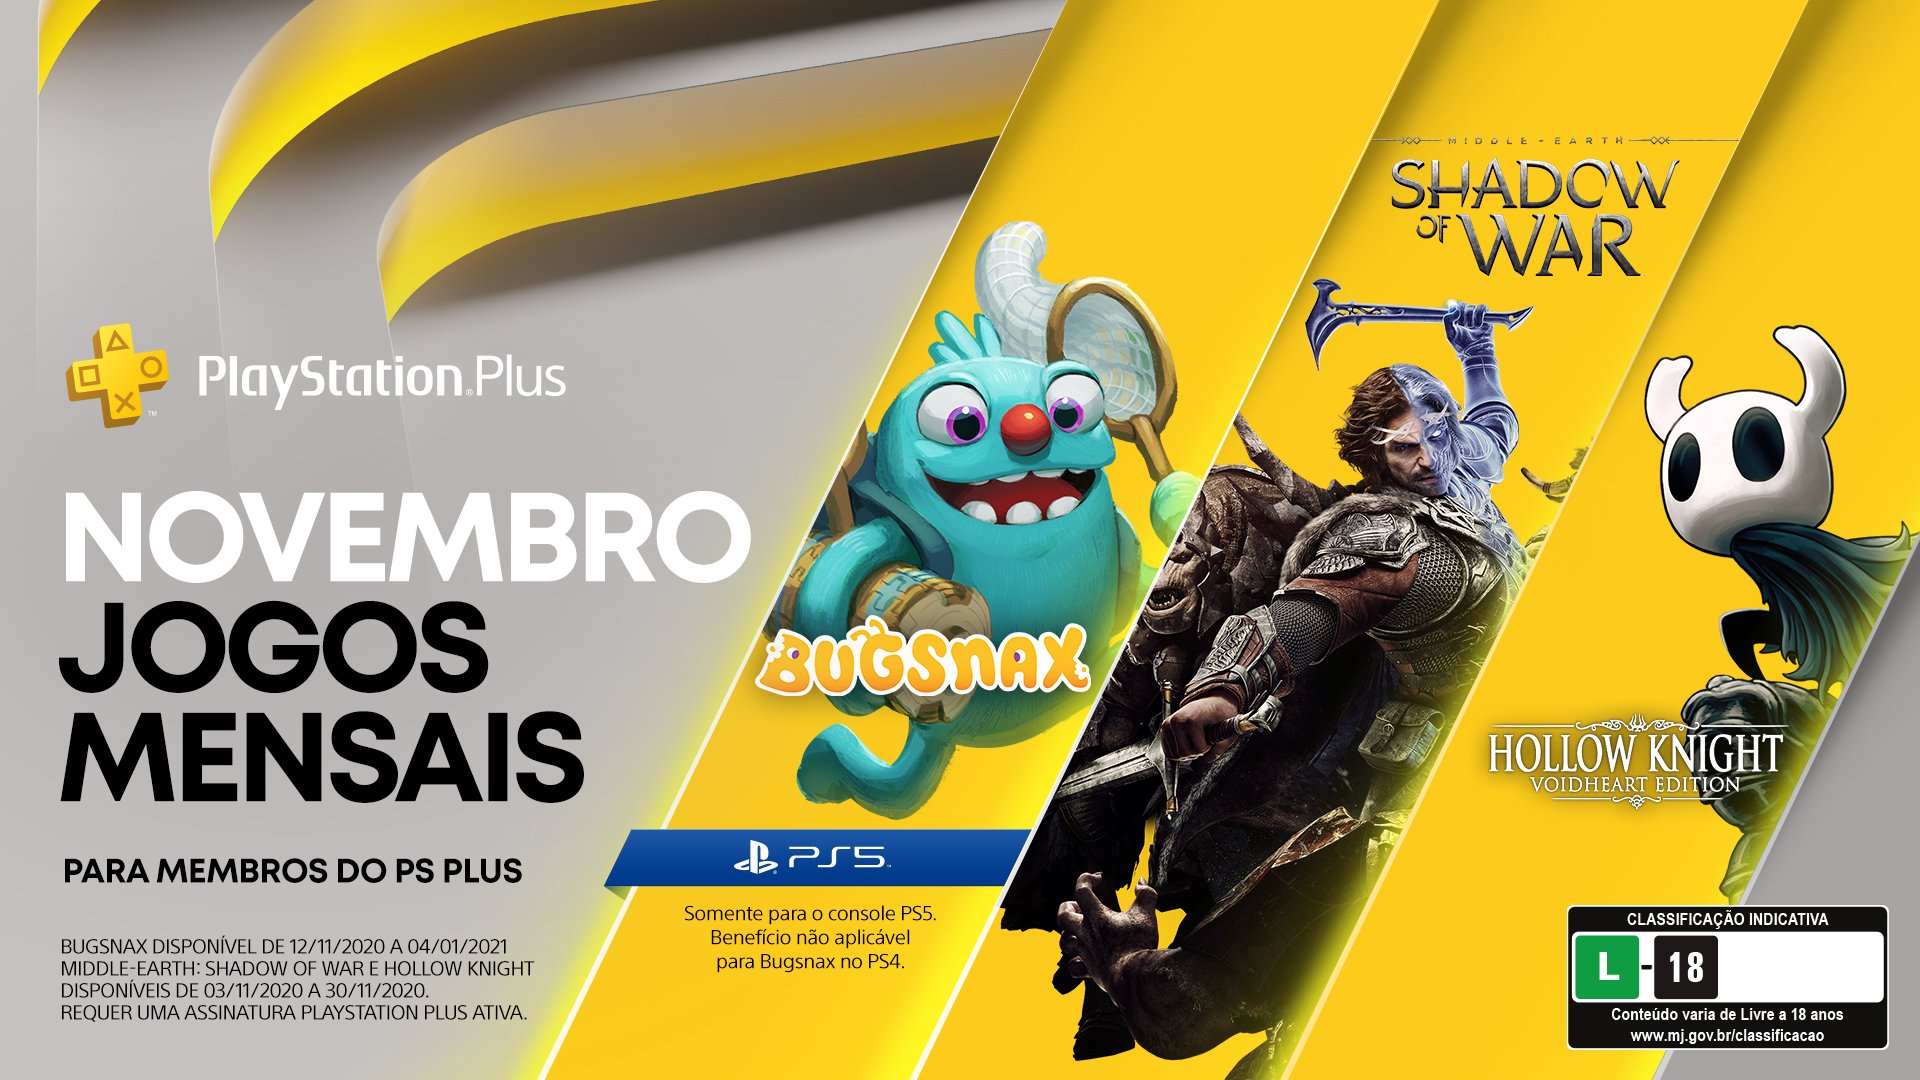 PS4, PS5: Jogos gratuitos do PS Plus de outubro confirmados